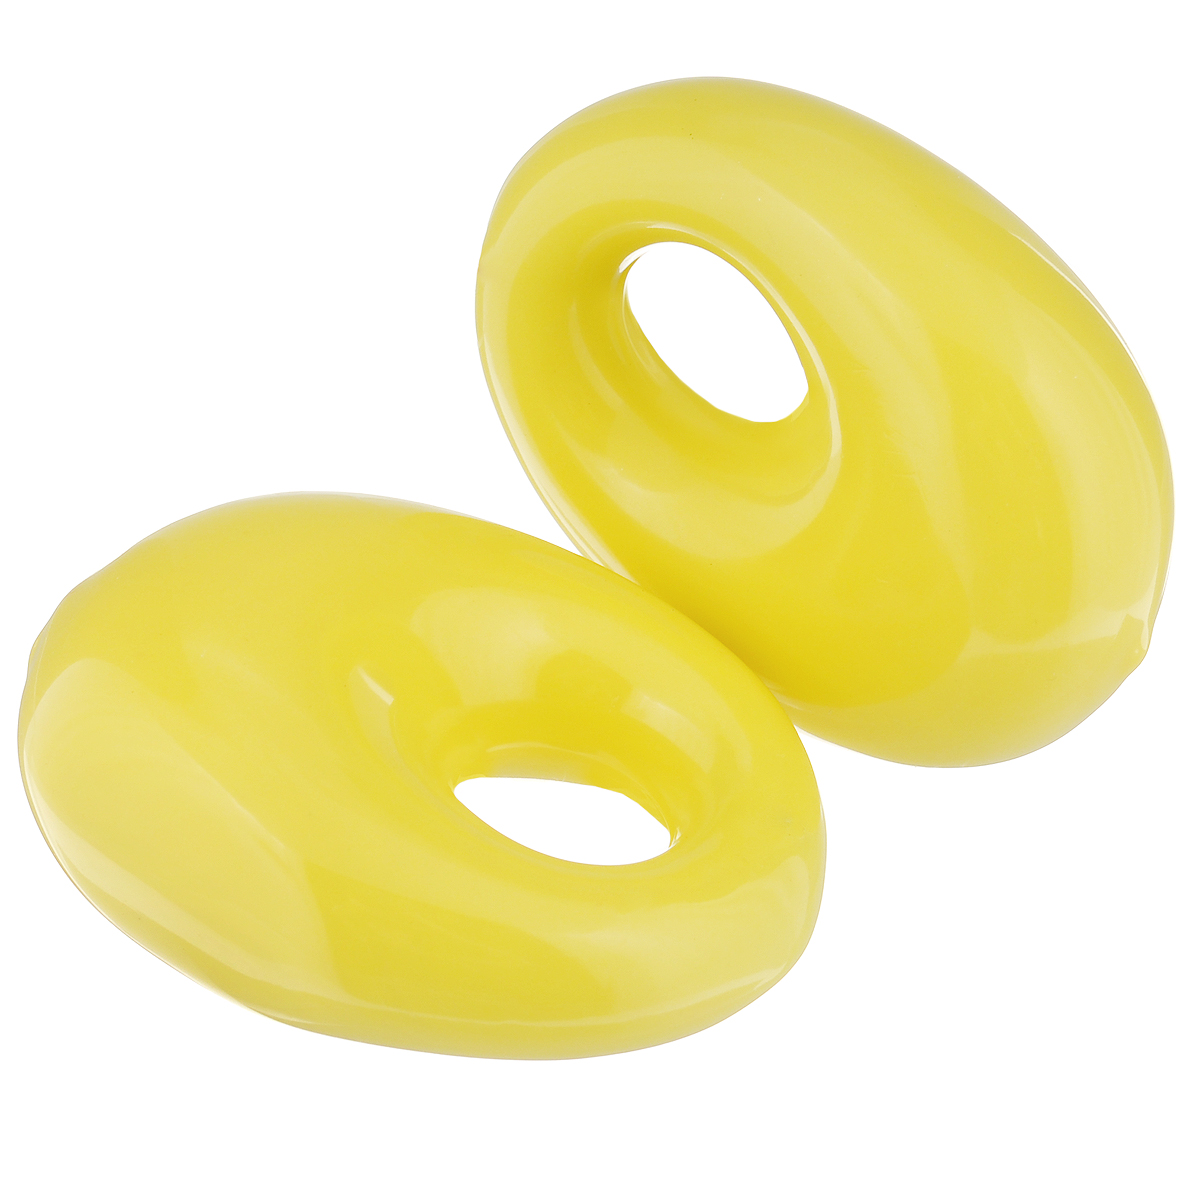 фото Утяжелители кистевые "Lite Weights", цвет: желтый, 2 шт х 0,5 кг